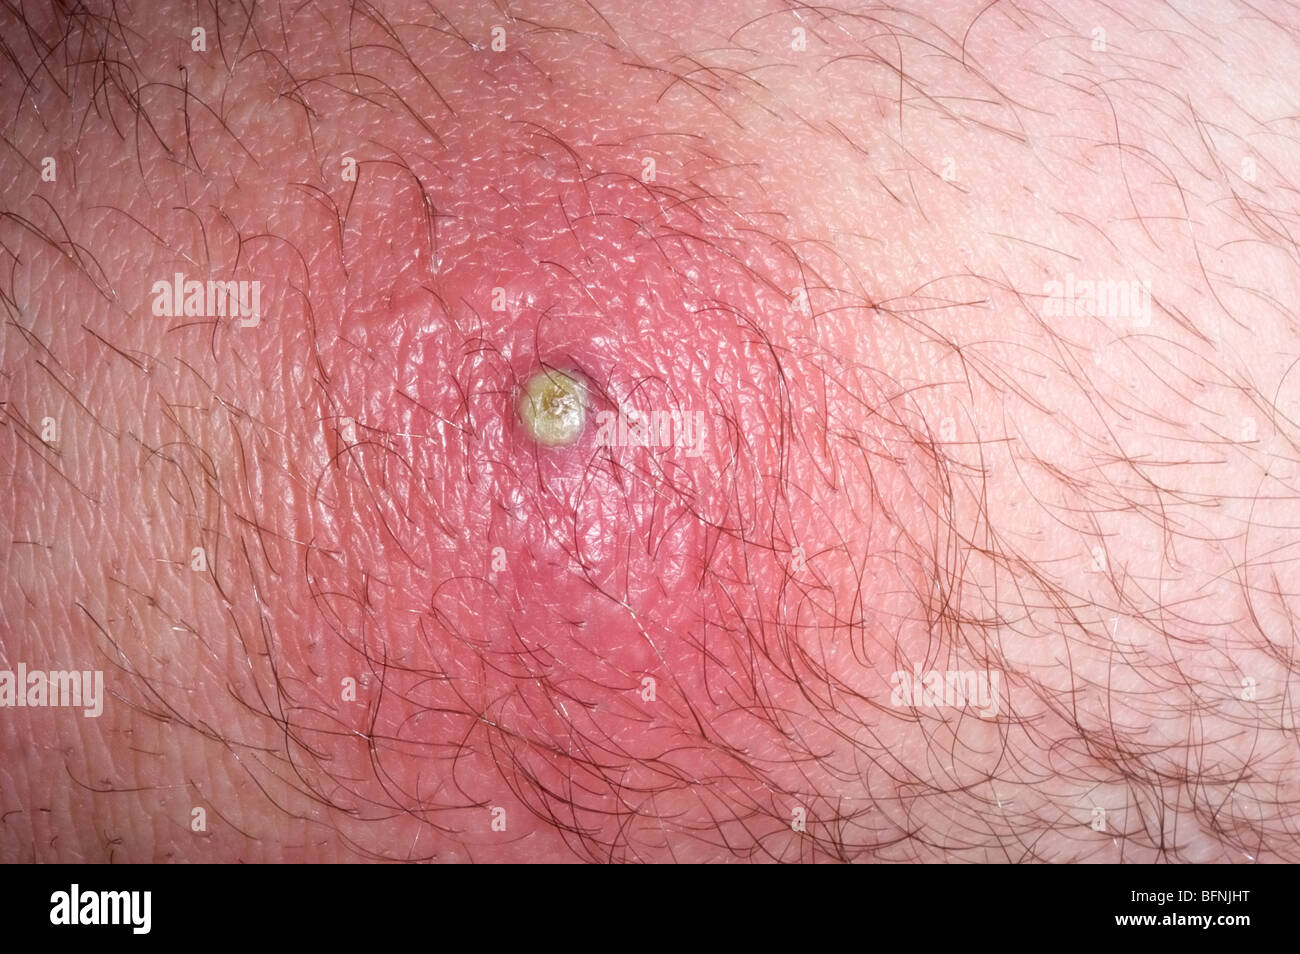 Staphylococcus aureus resistente a la meticilina (SARM) infección de la piel en un varón de 26 años Foto de stock